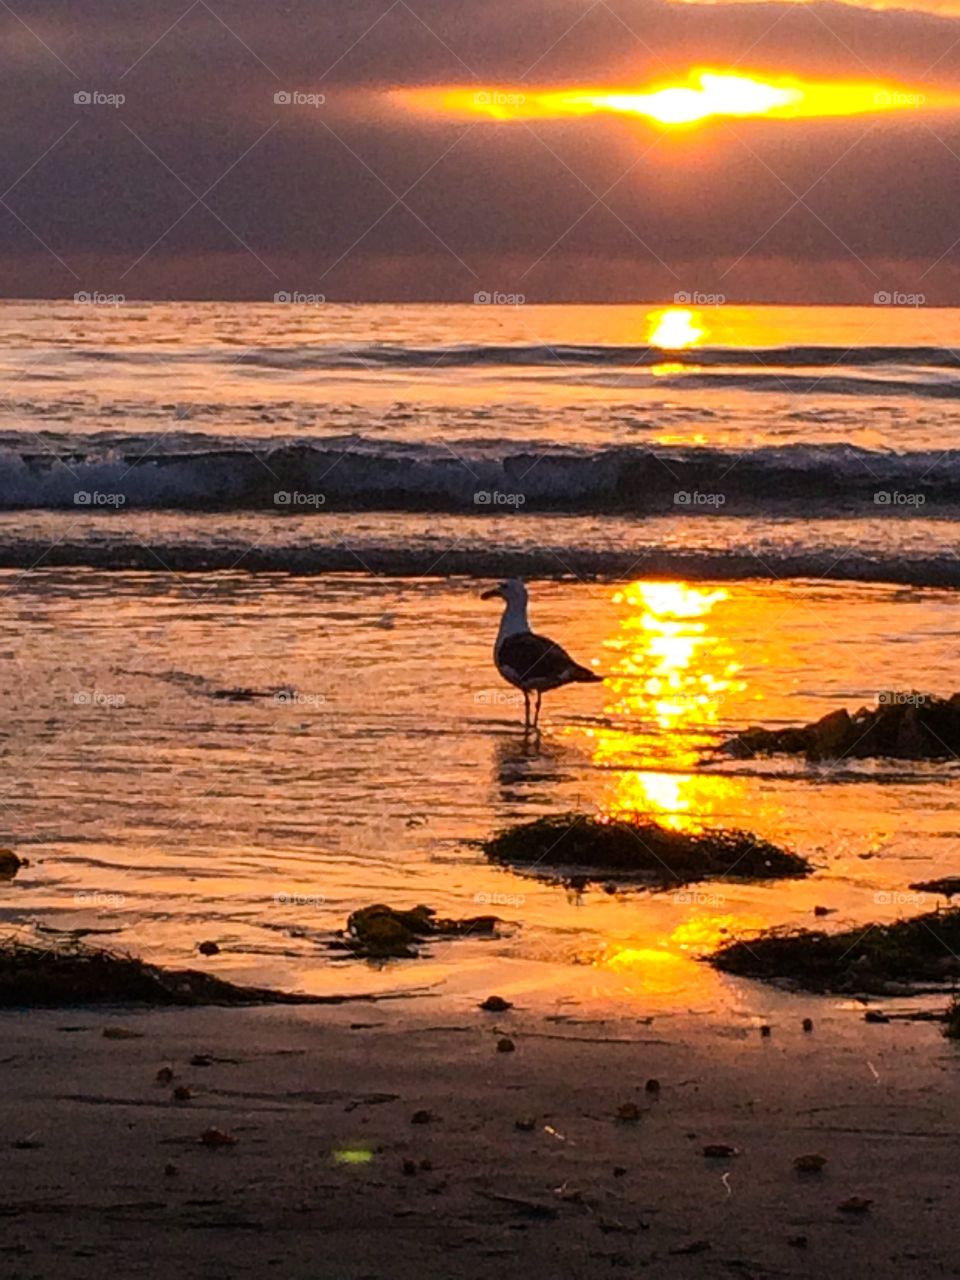 La Jolla Bird and Sunset